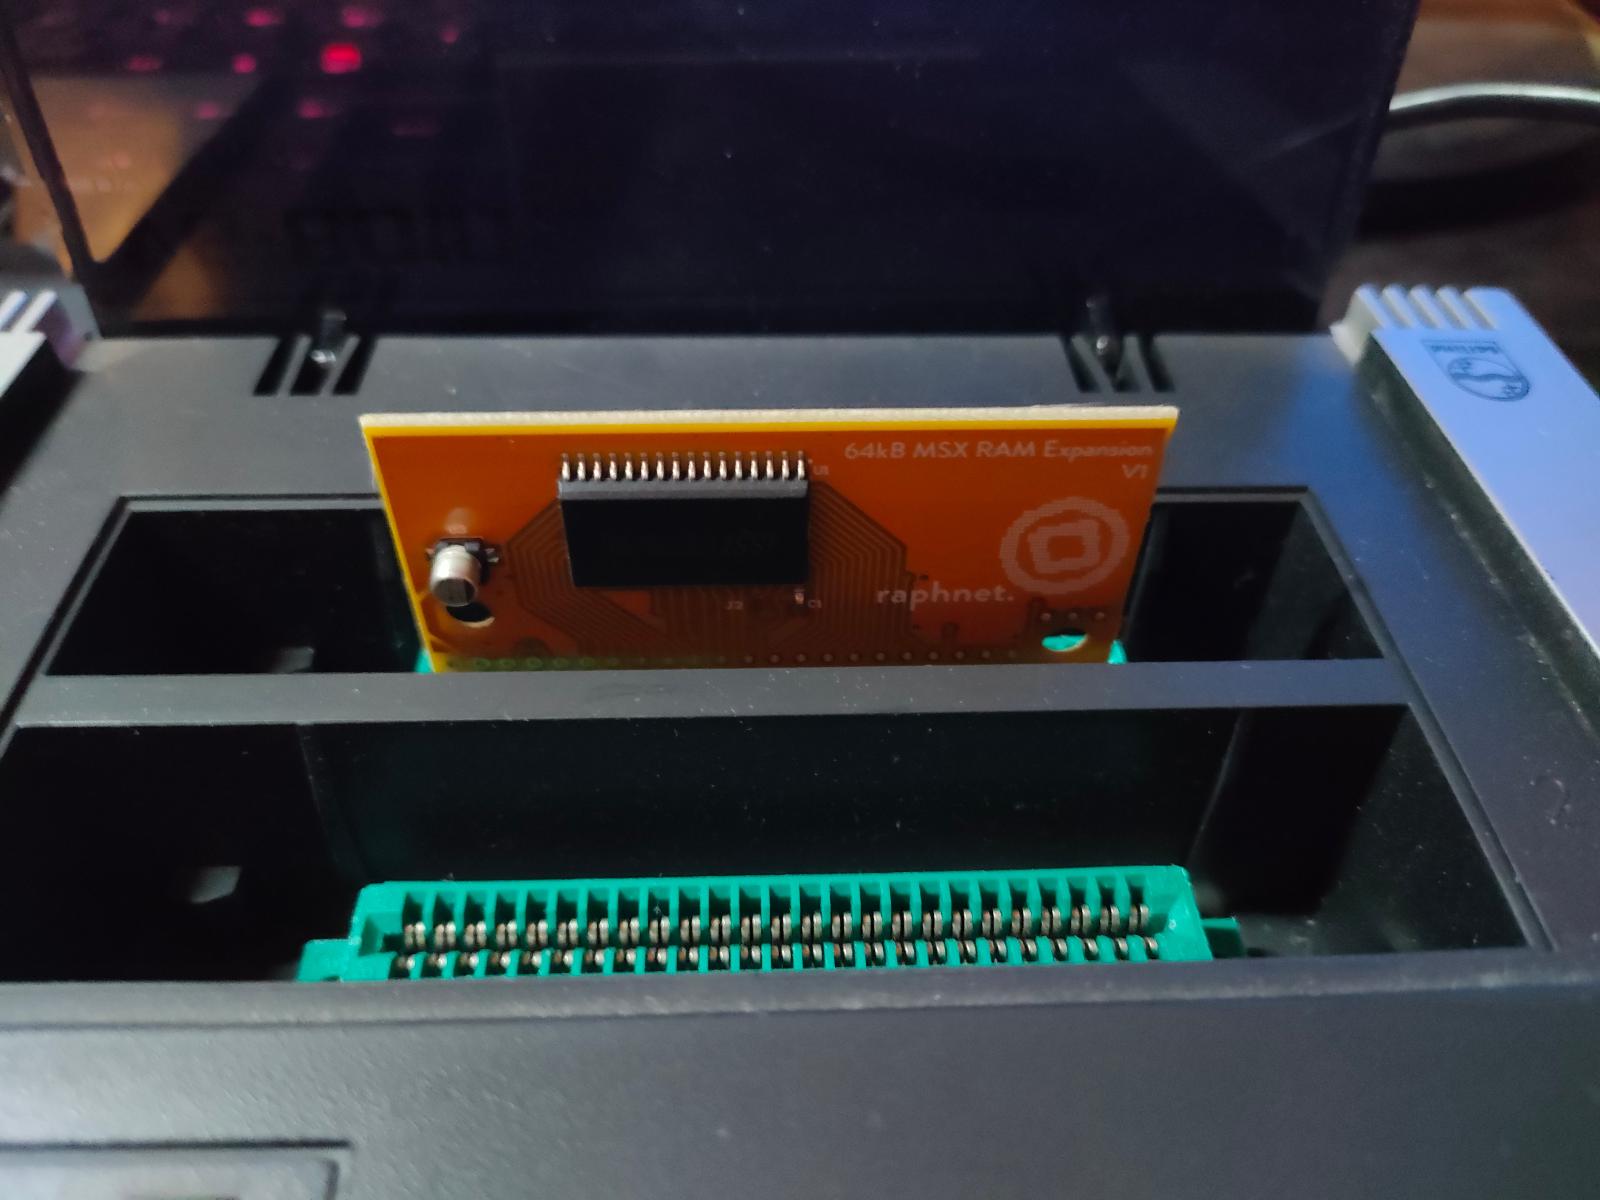 MSX 64kB RAM Expansion - rozšírenie pamäte RAM na plných 64kB - Počítače a hry